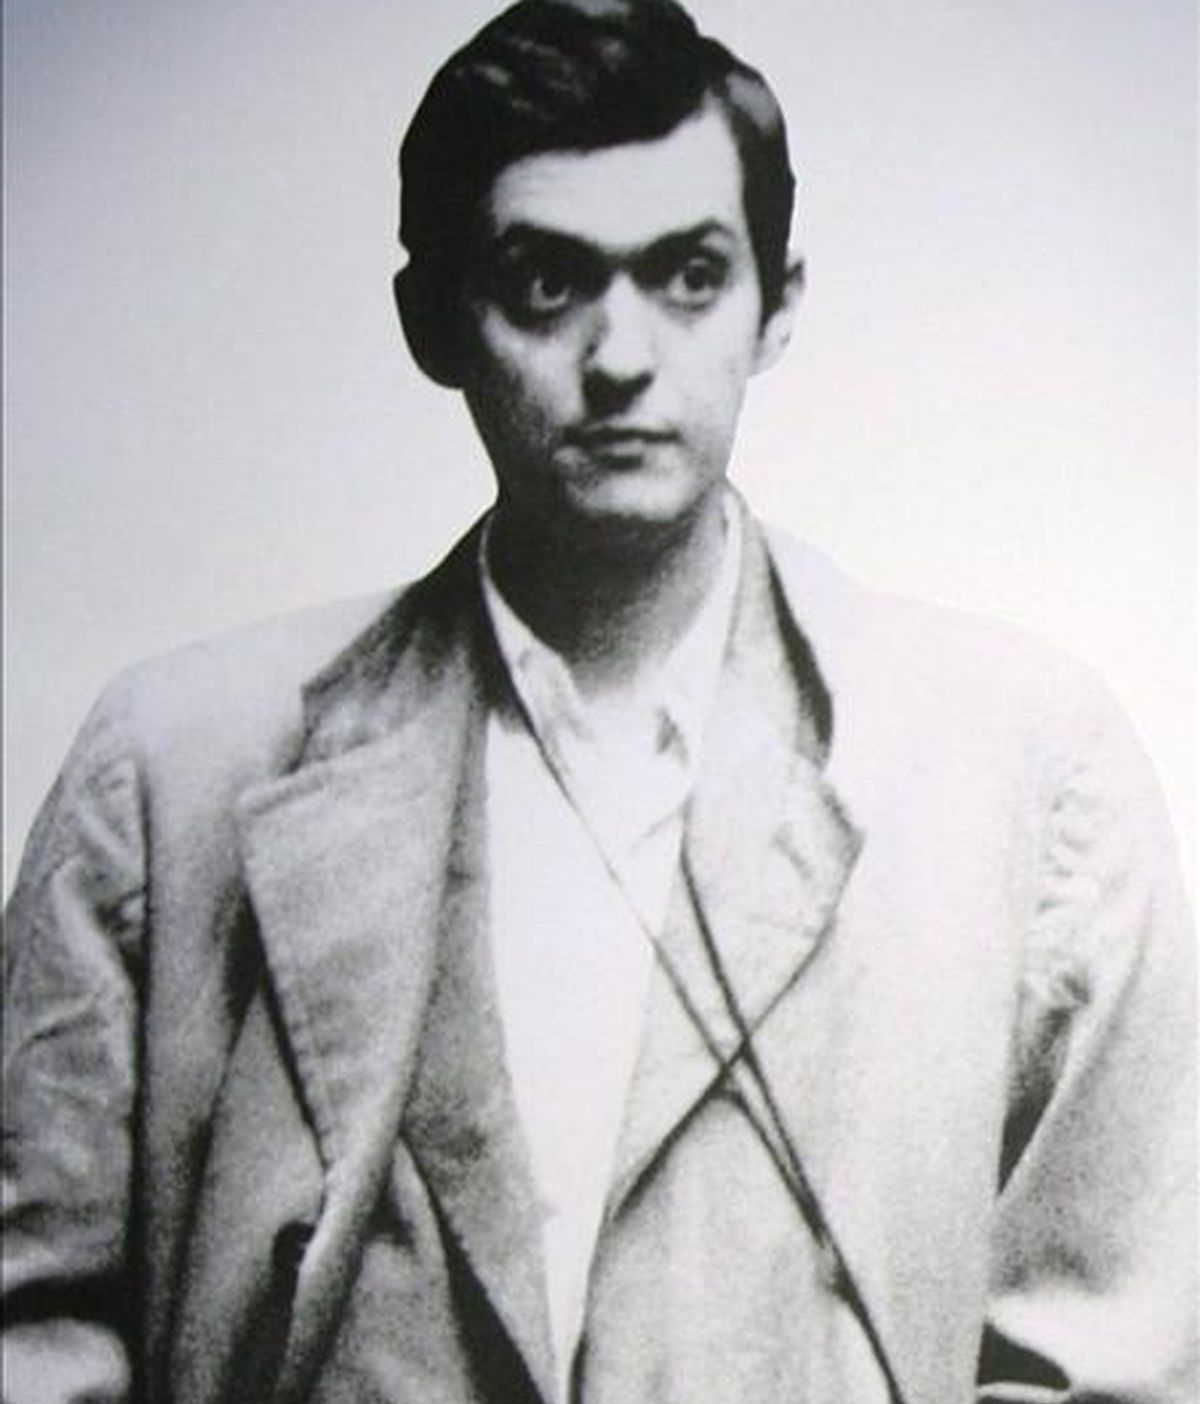 Retrato del director de cine Stanley Kubrick, cuya obra "El resplandor" será exhibida en el Festival de Cine de Sitges. EFE/Archivo